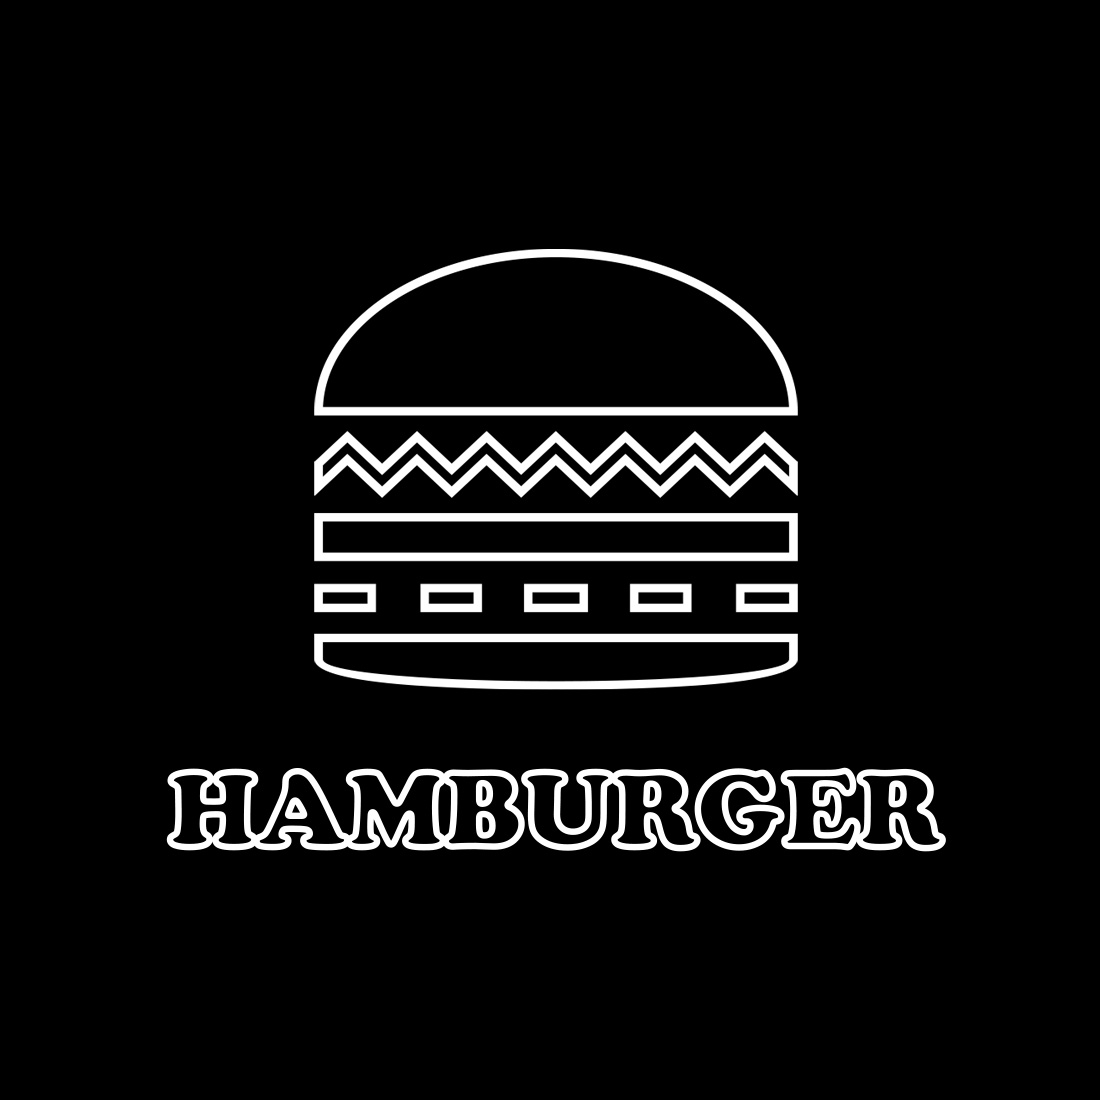 Hamburger Logo preview image.